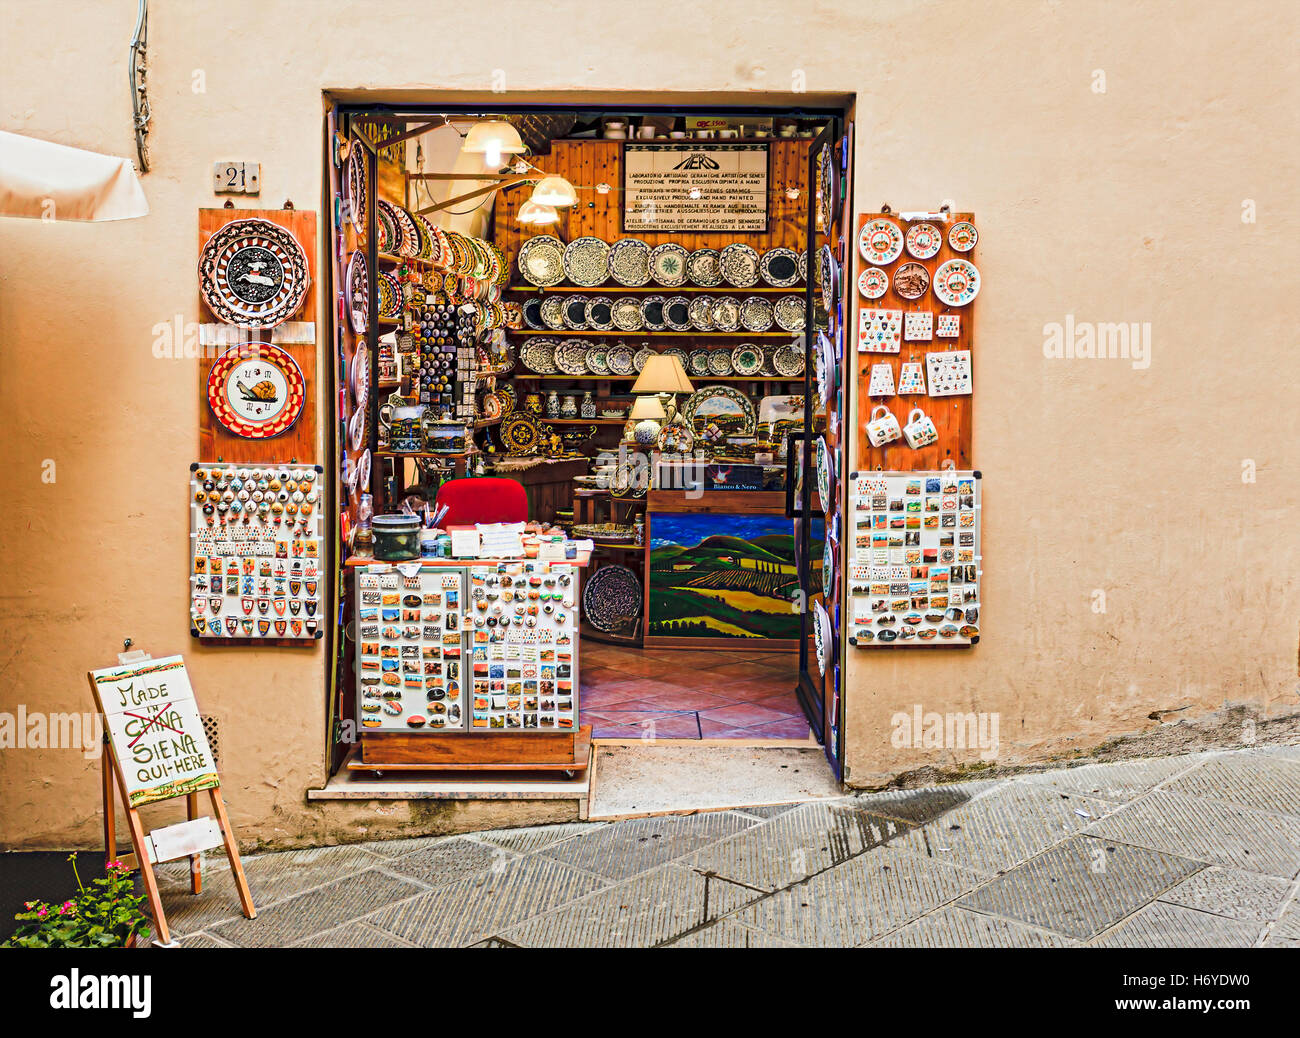 SIENA, Italien - 29. Juni 2013: Traditionelle Kunst und Souvenir-Shop in der Altstadt von Siena, Italien in einem Gebiet Contrade Schnecke. Stockfoto